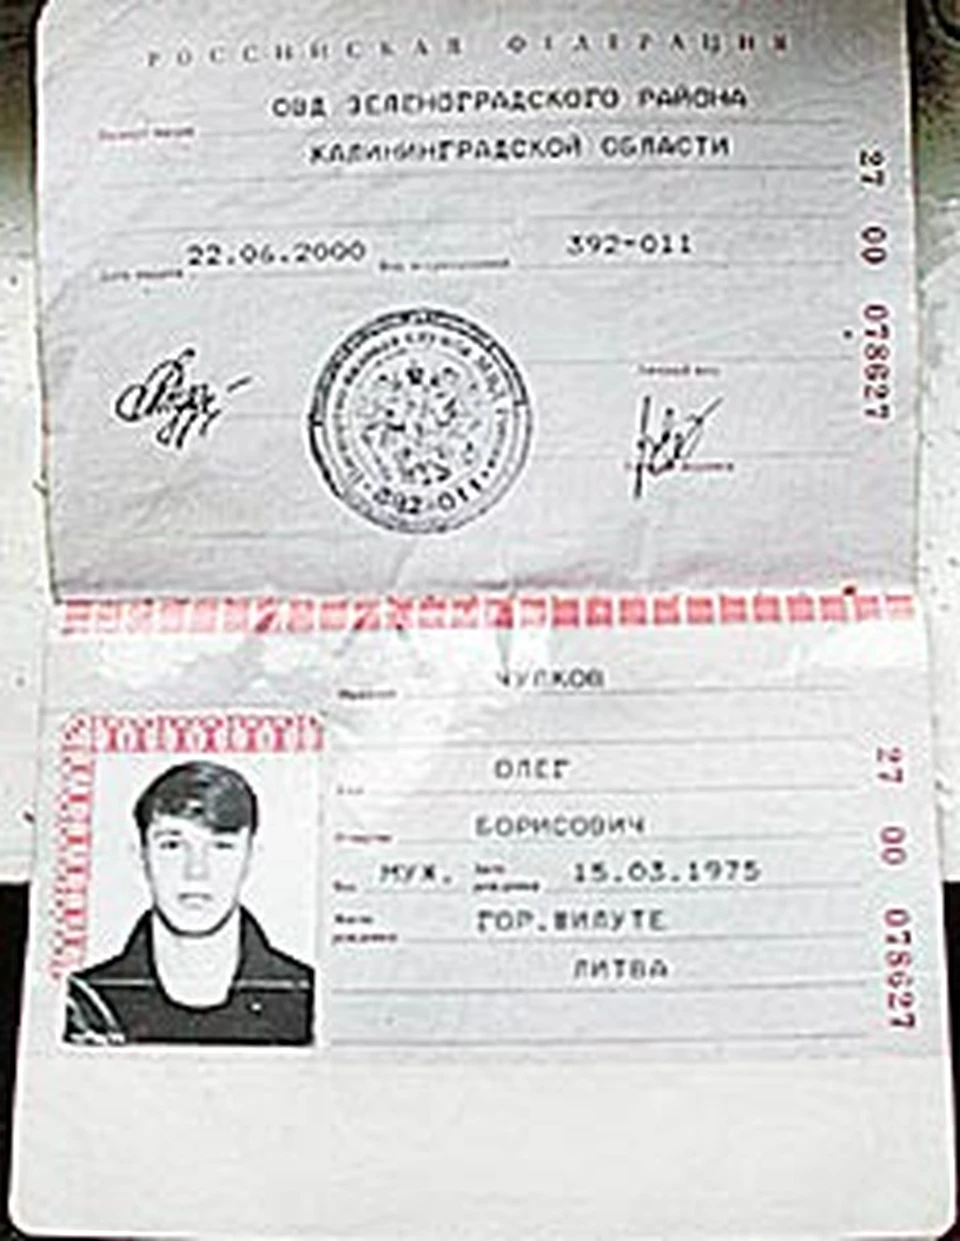 А на фотографии в паспорте у рецидивиста Кренделя лицо нормального человека.